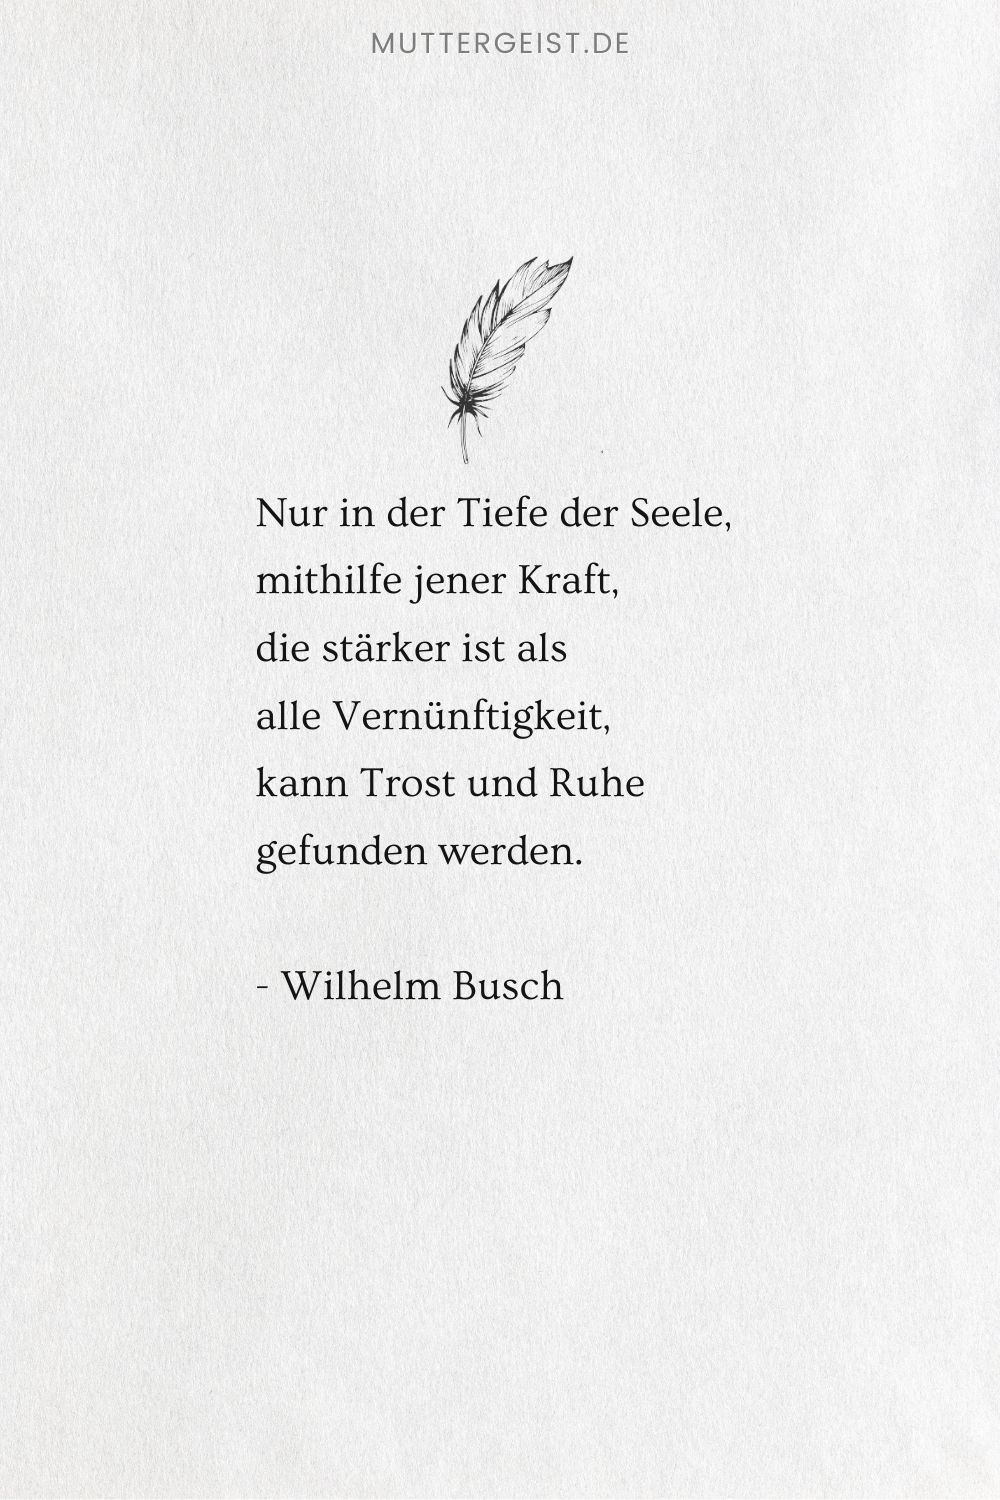 Wilhelm Busch Spruch über das Finden von Trost und Frieden in der Seele